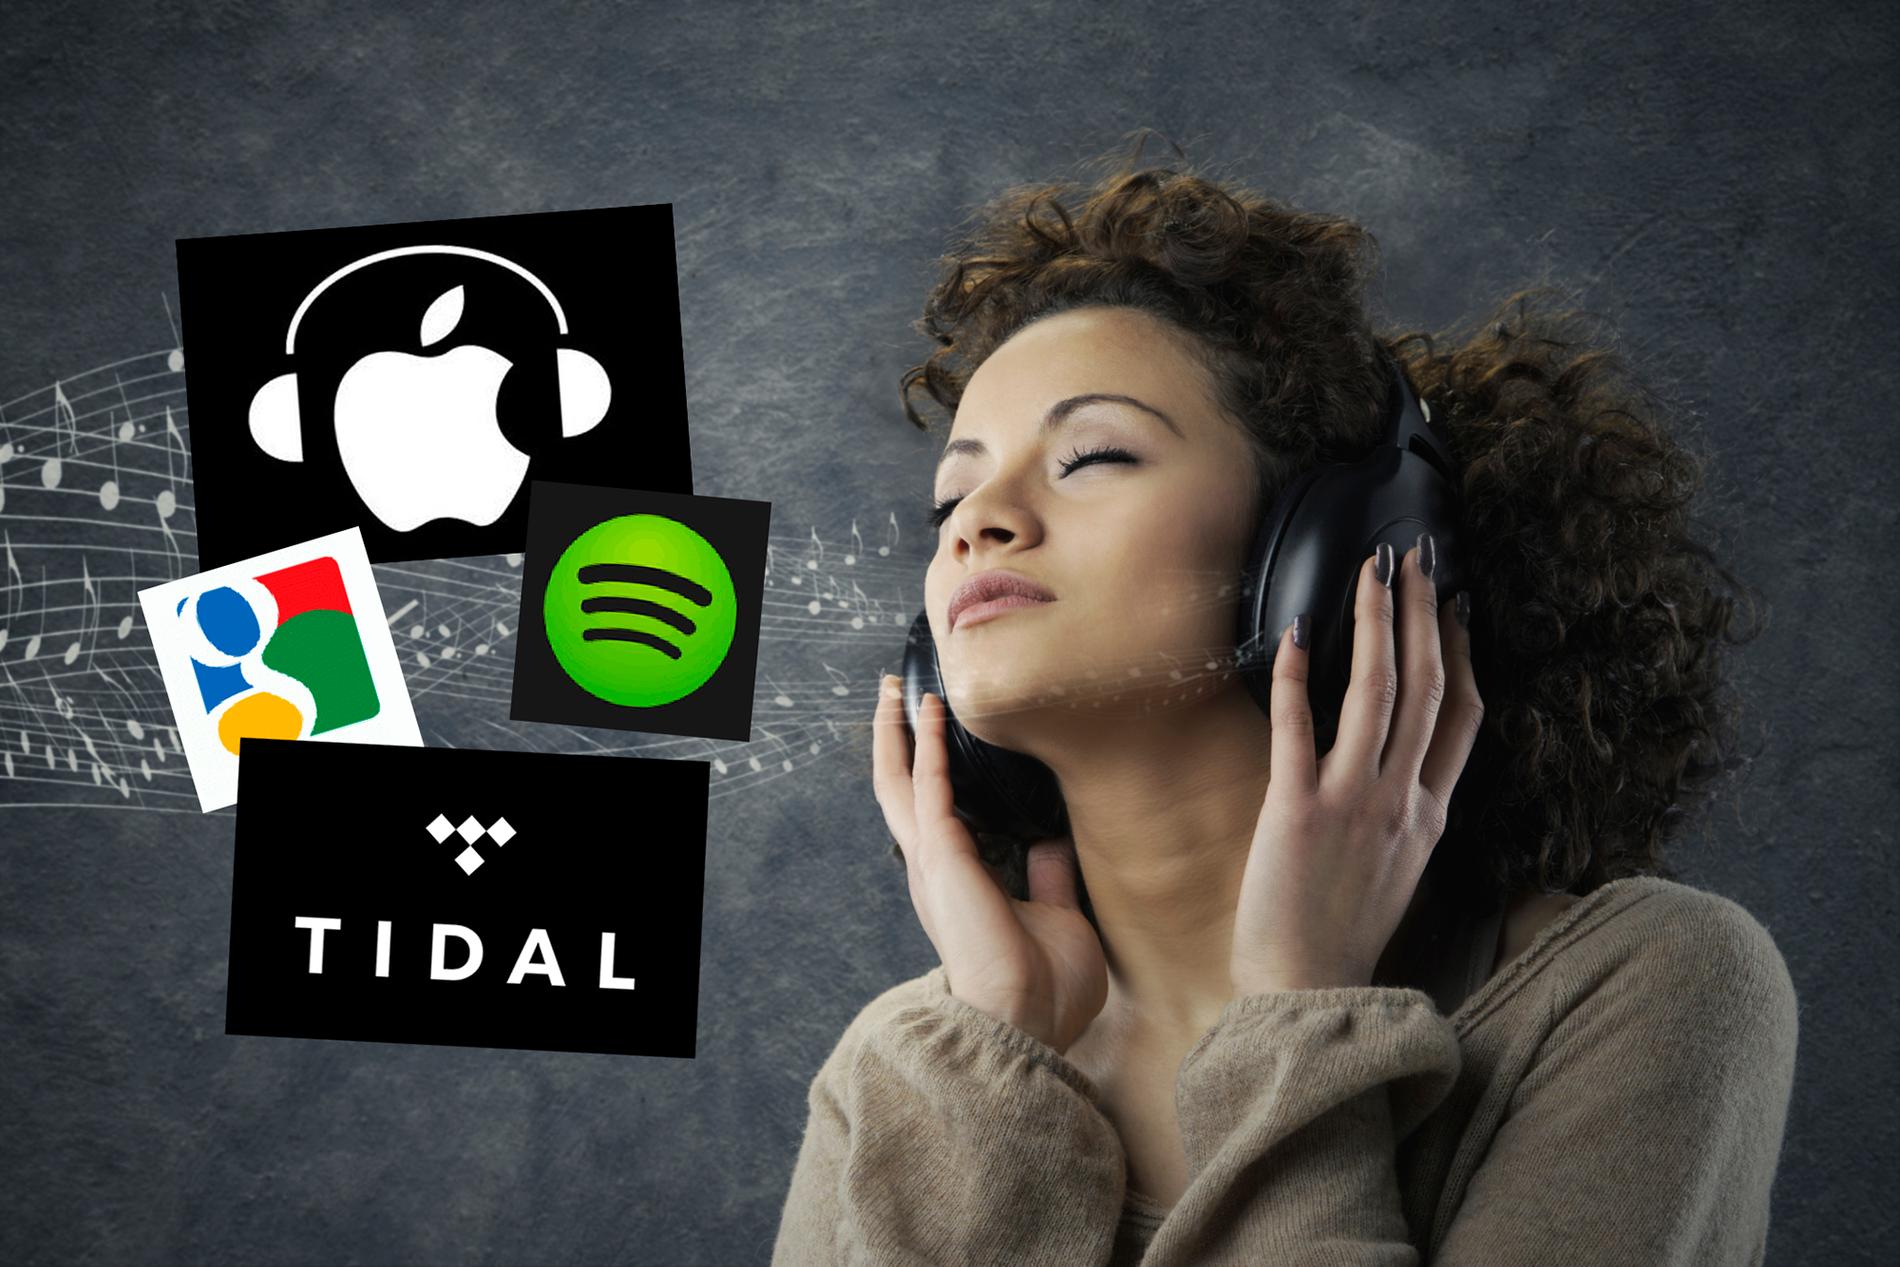 Apple music, Spotify, Tidal... nu trappar Google upp musikkriget ytterligare.